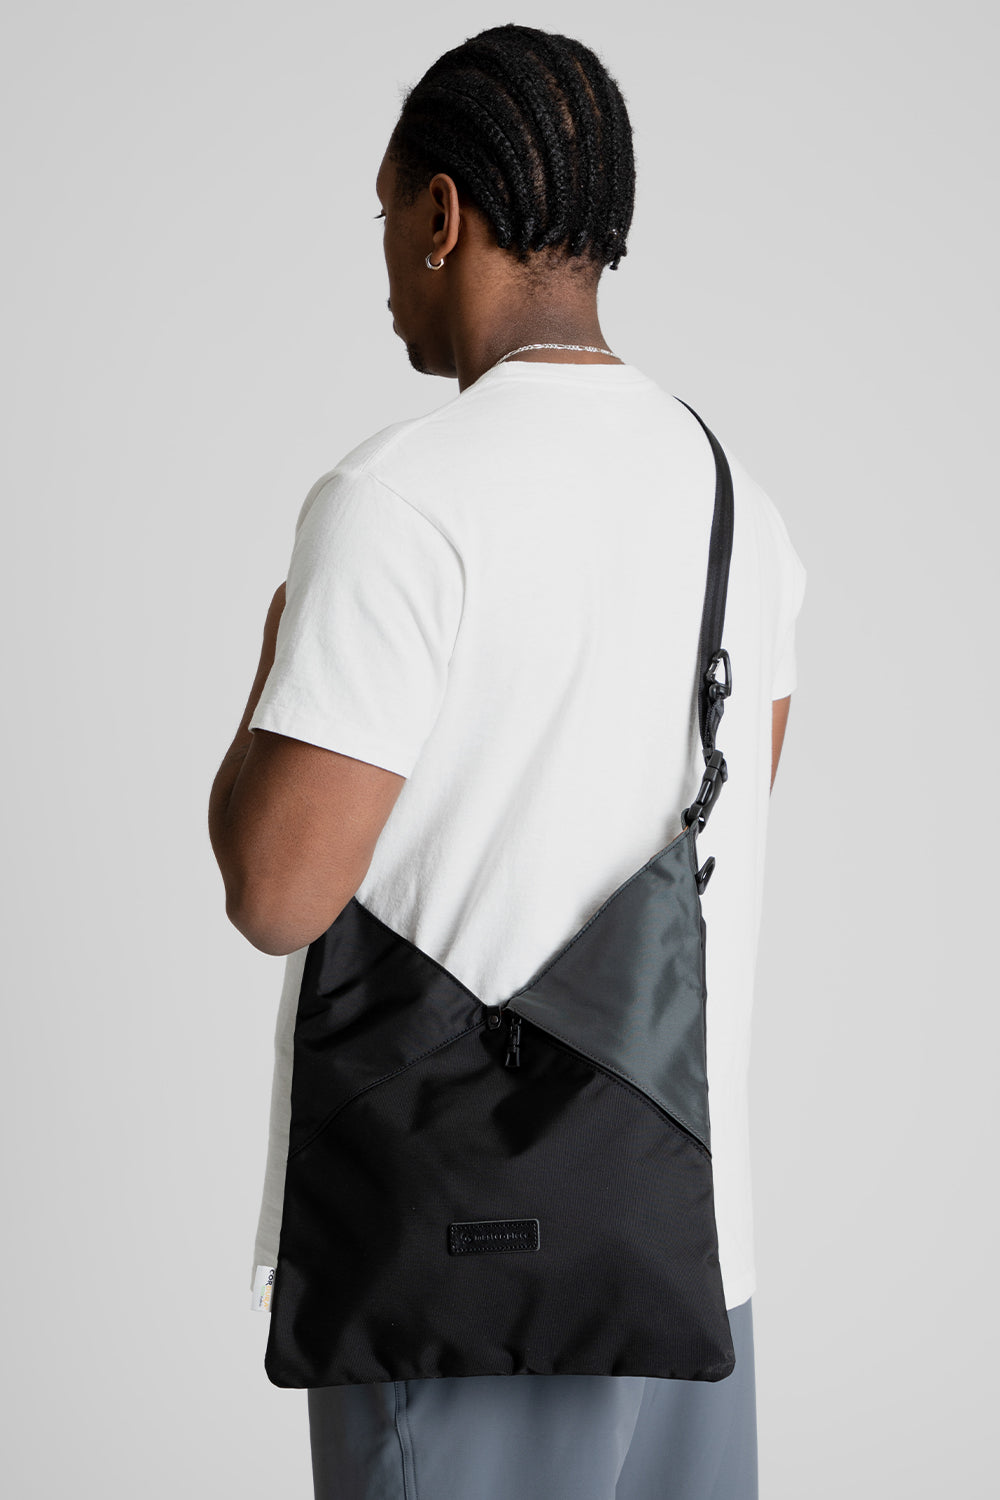 Master-Piece Slant Shoulder Bag in Black/Grey